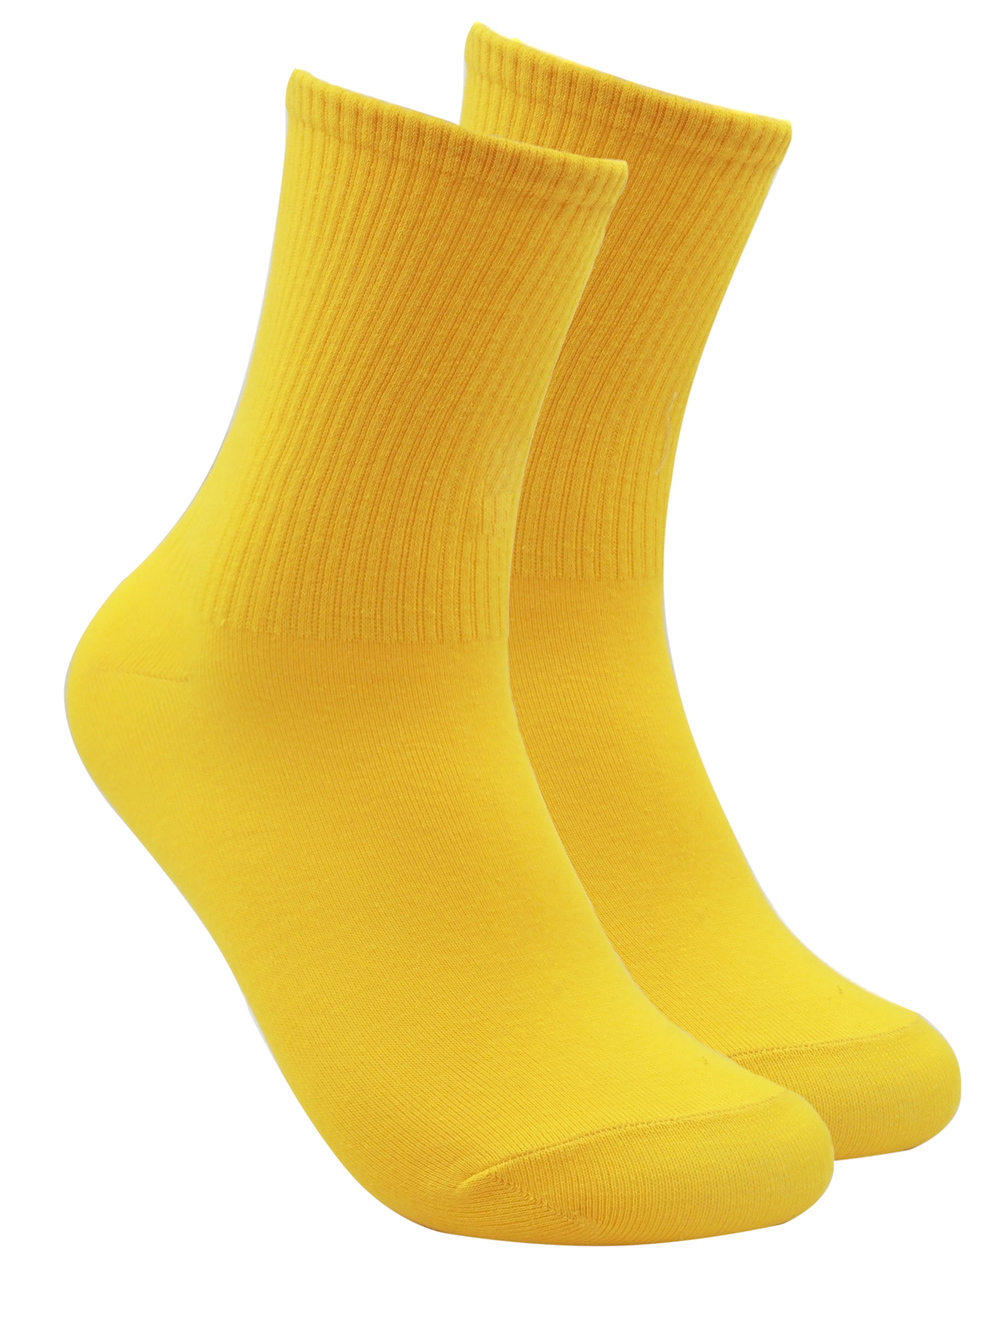 Носки р.35-40 "Sport Colour" Yellow